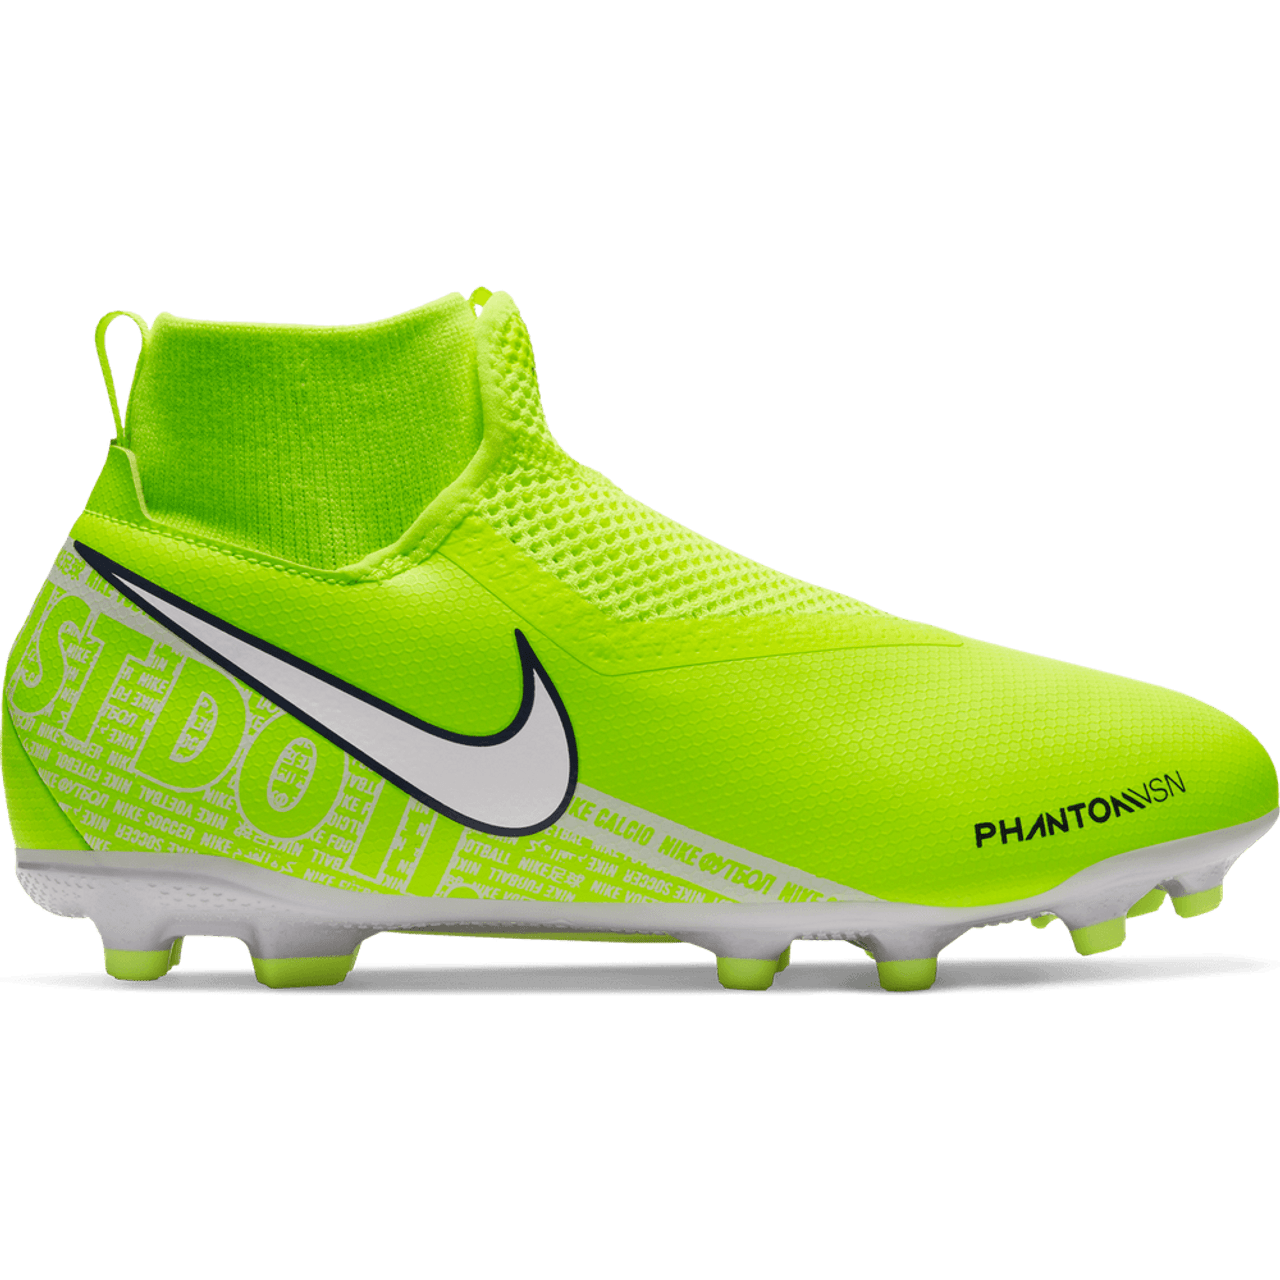 Nike PhantomVSN Football Boots Fake Nike Football Boots